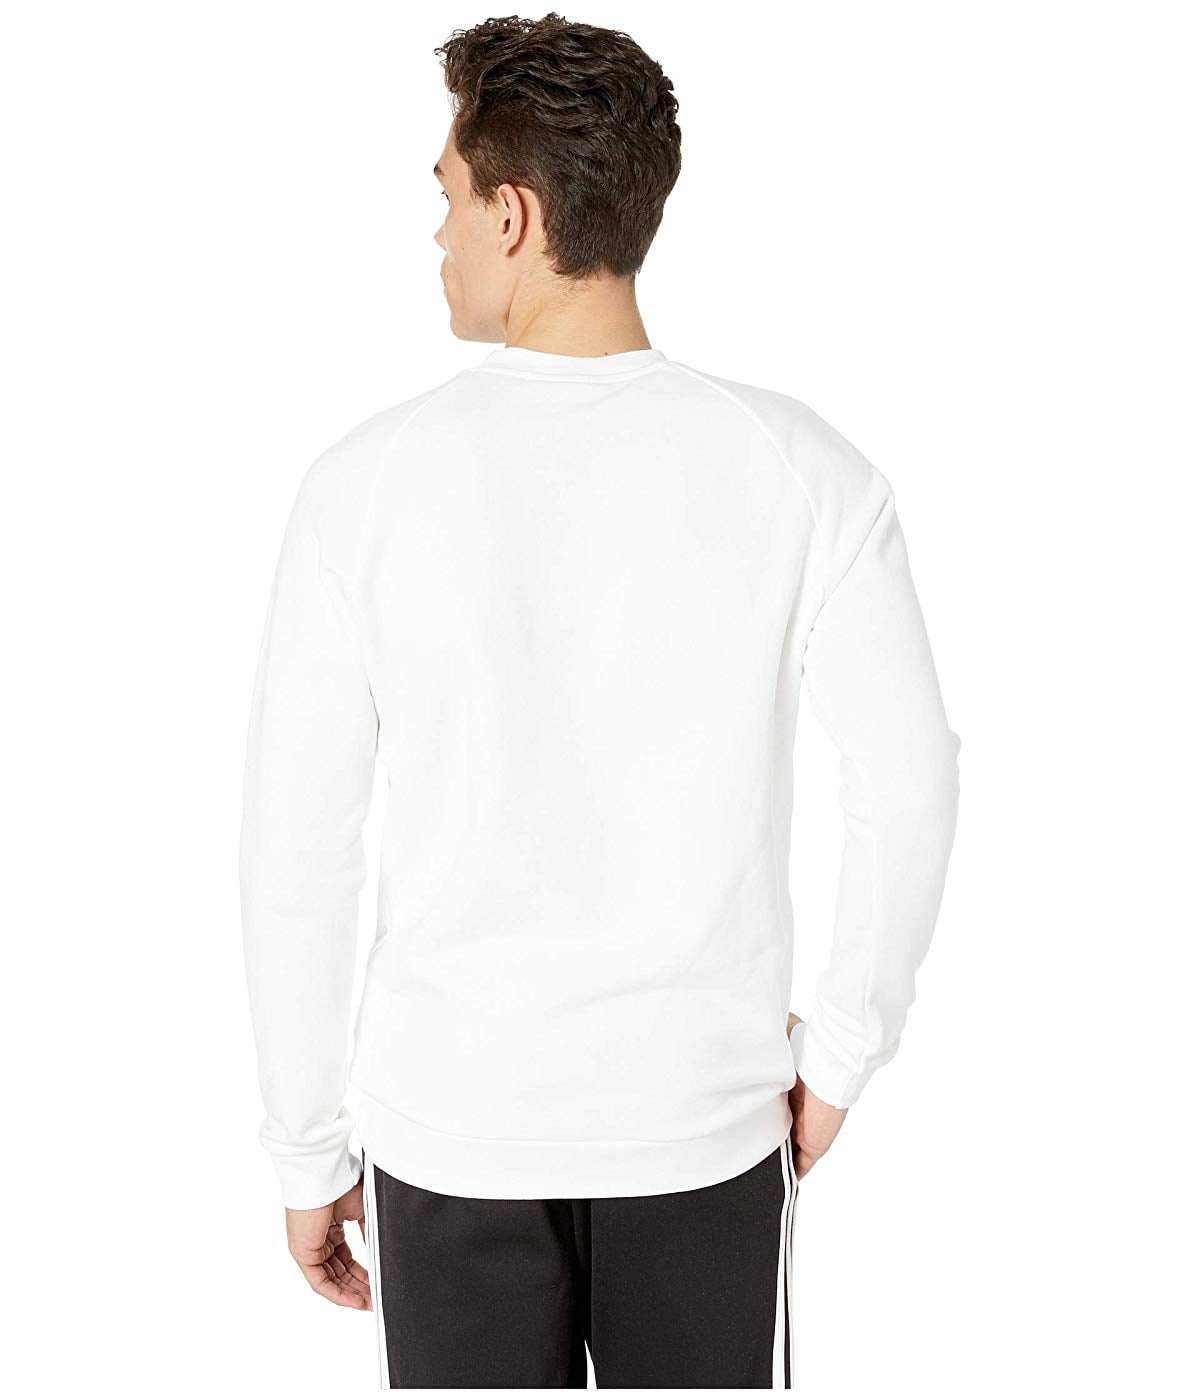 white adidas crew sweatshirt